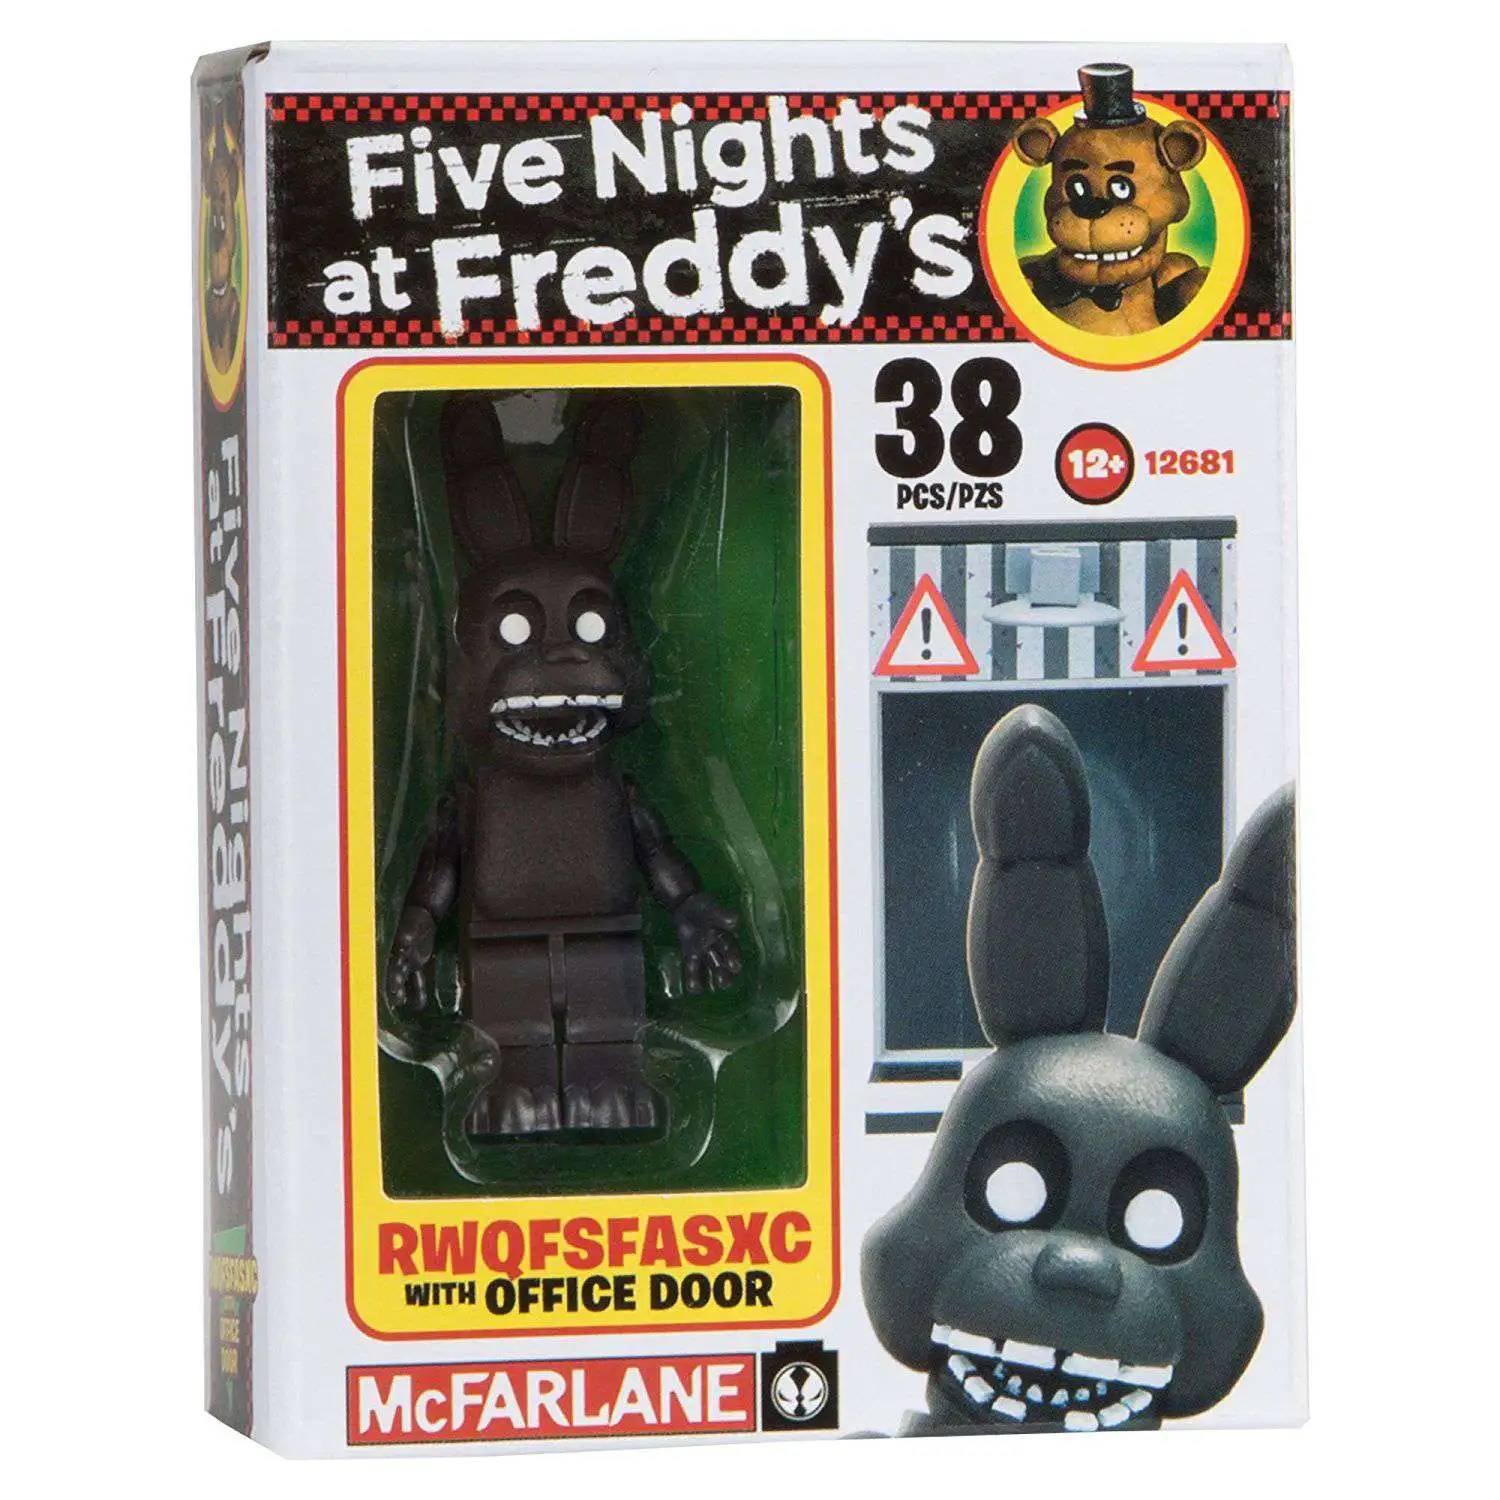 FIVE NIGHTS AT FREDDY'S MINI FIGURES (3) - FREDDY, FOXY, SHADOW FREDDY  MCFARLANE